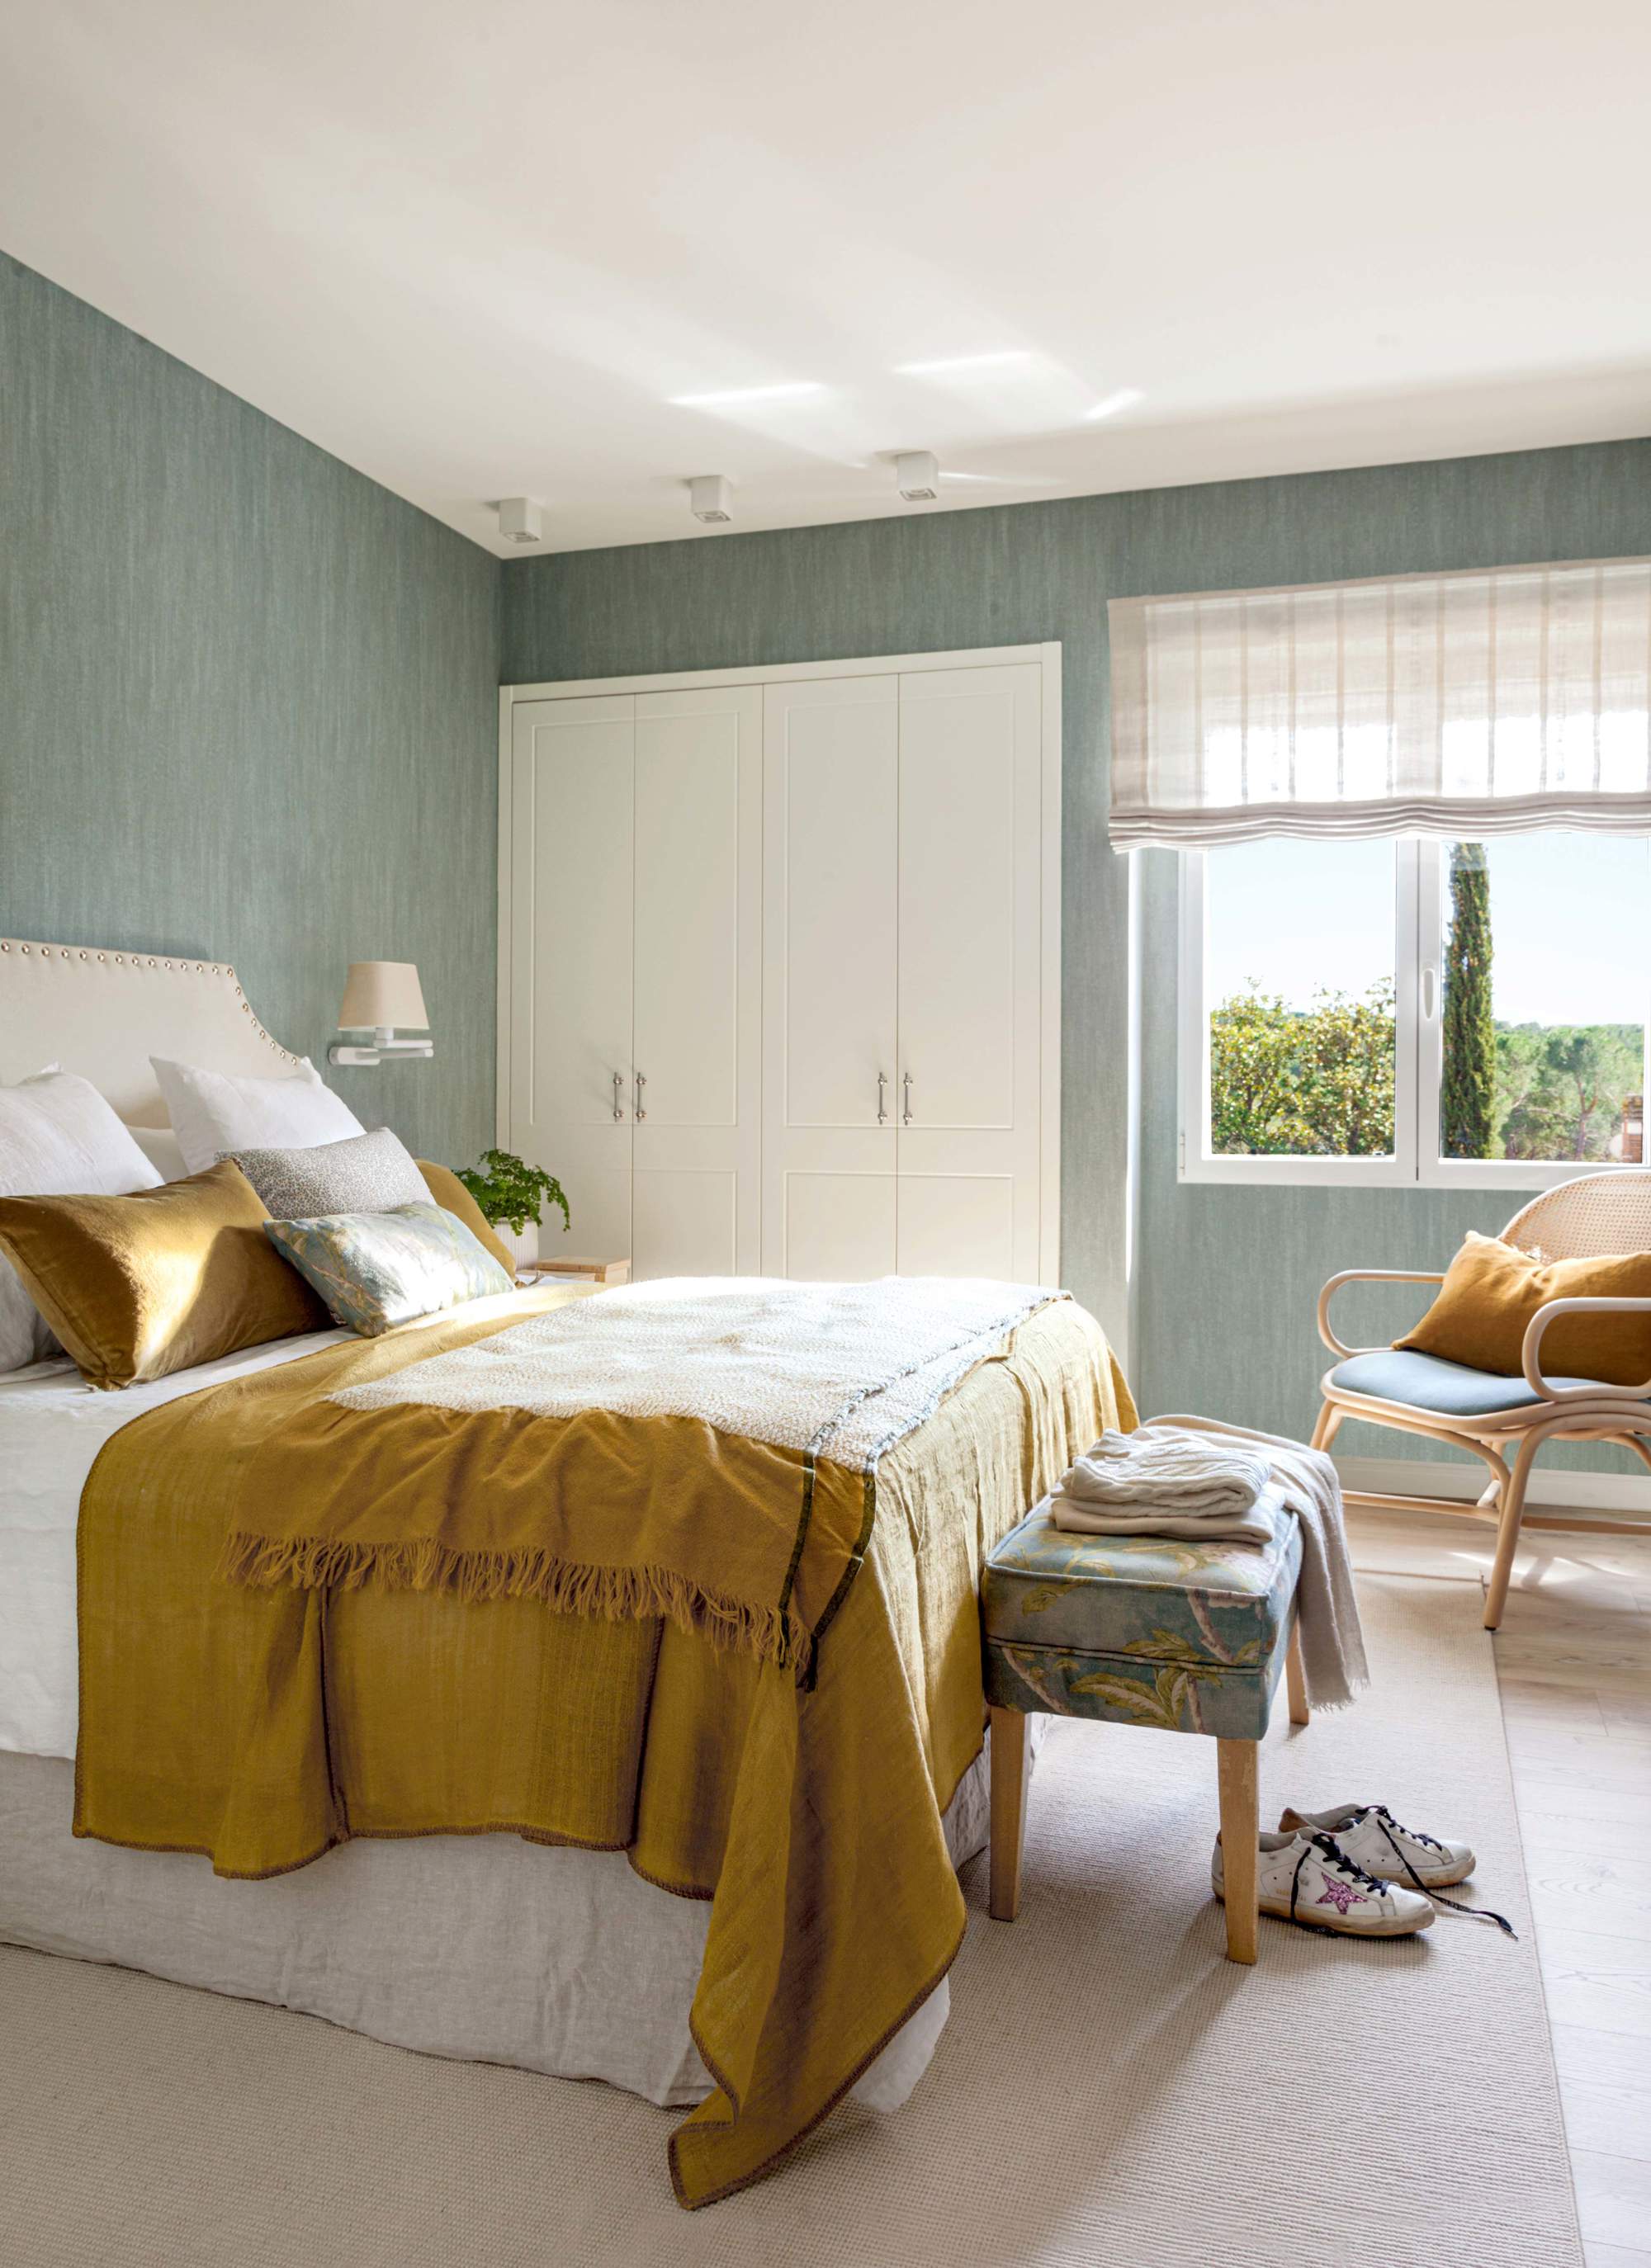 Dormitorio pequeño con papel pintado con textura y armario empotrado blanco